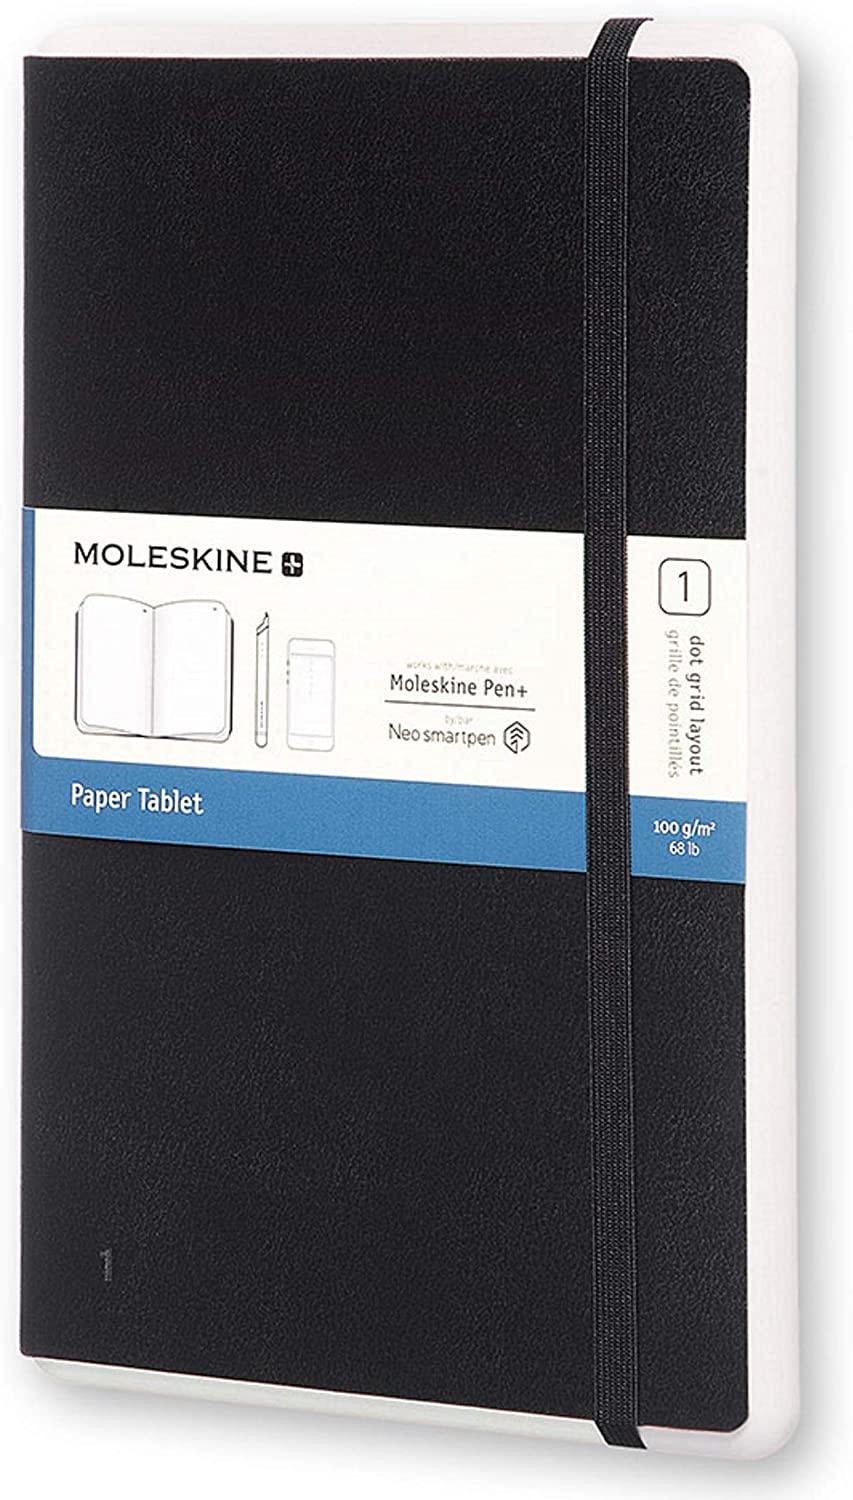 clicca su immagine per consultare dettagli, vedere altre foto e ordinare Moleskine Notebook Paper Tablet Puntinato Adatto Uso con Pen